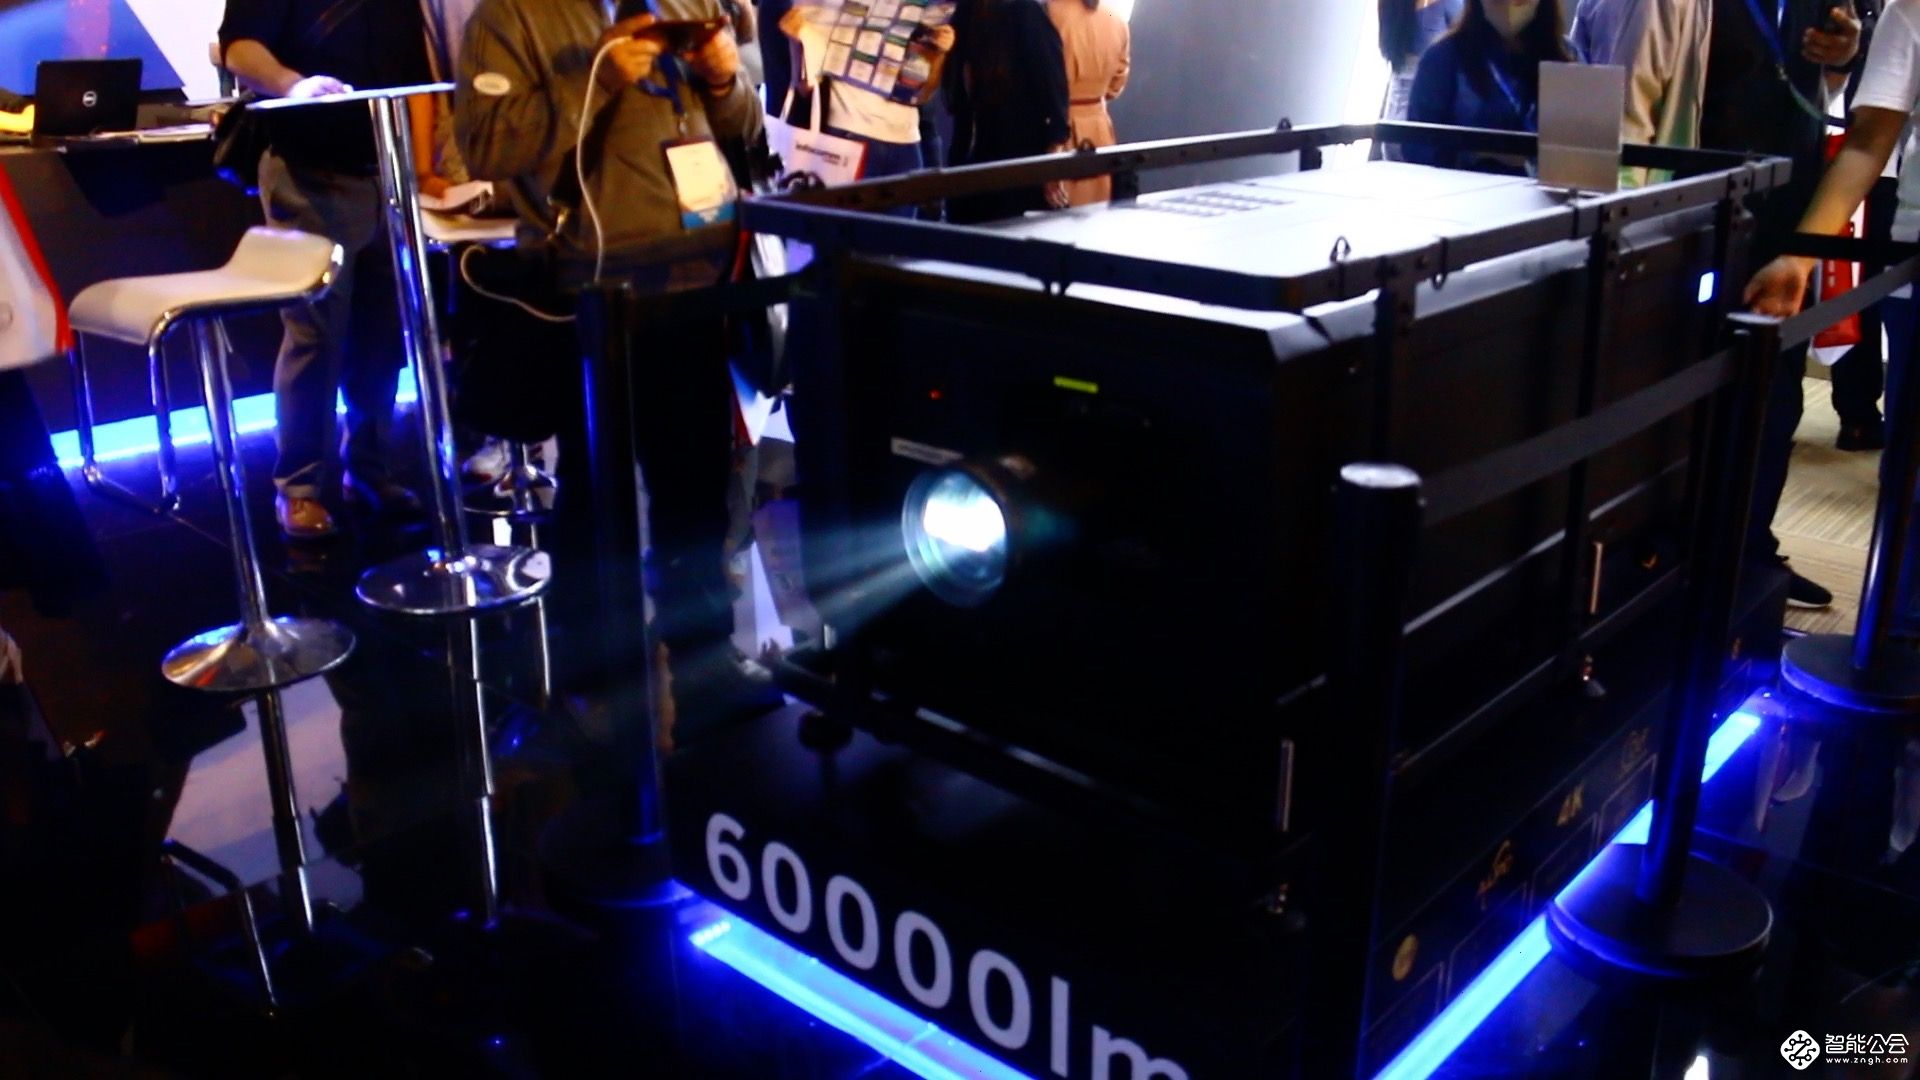 33000流明！ 光峰科技工程机新品T系列重磅亮相北京IFC 智能公会